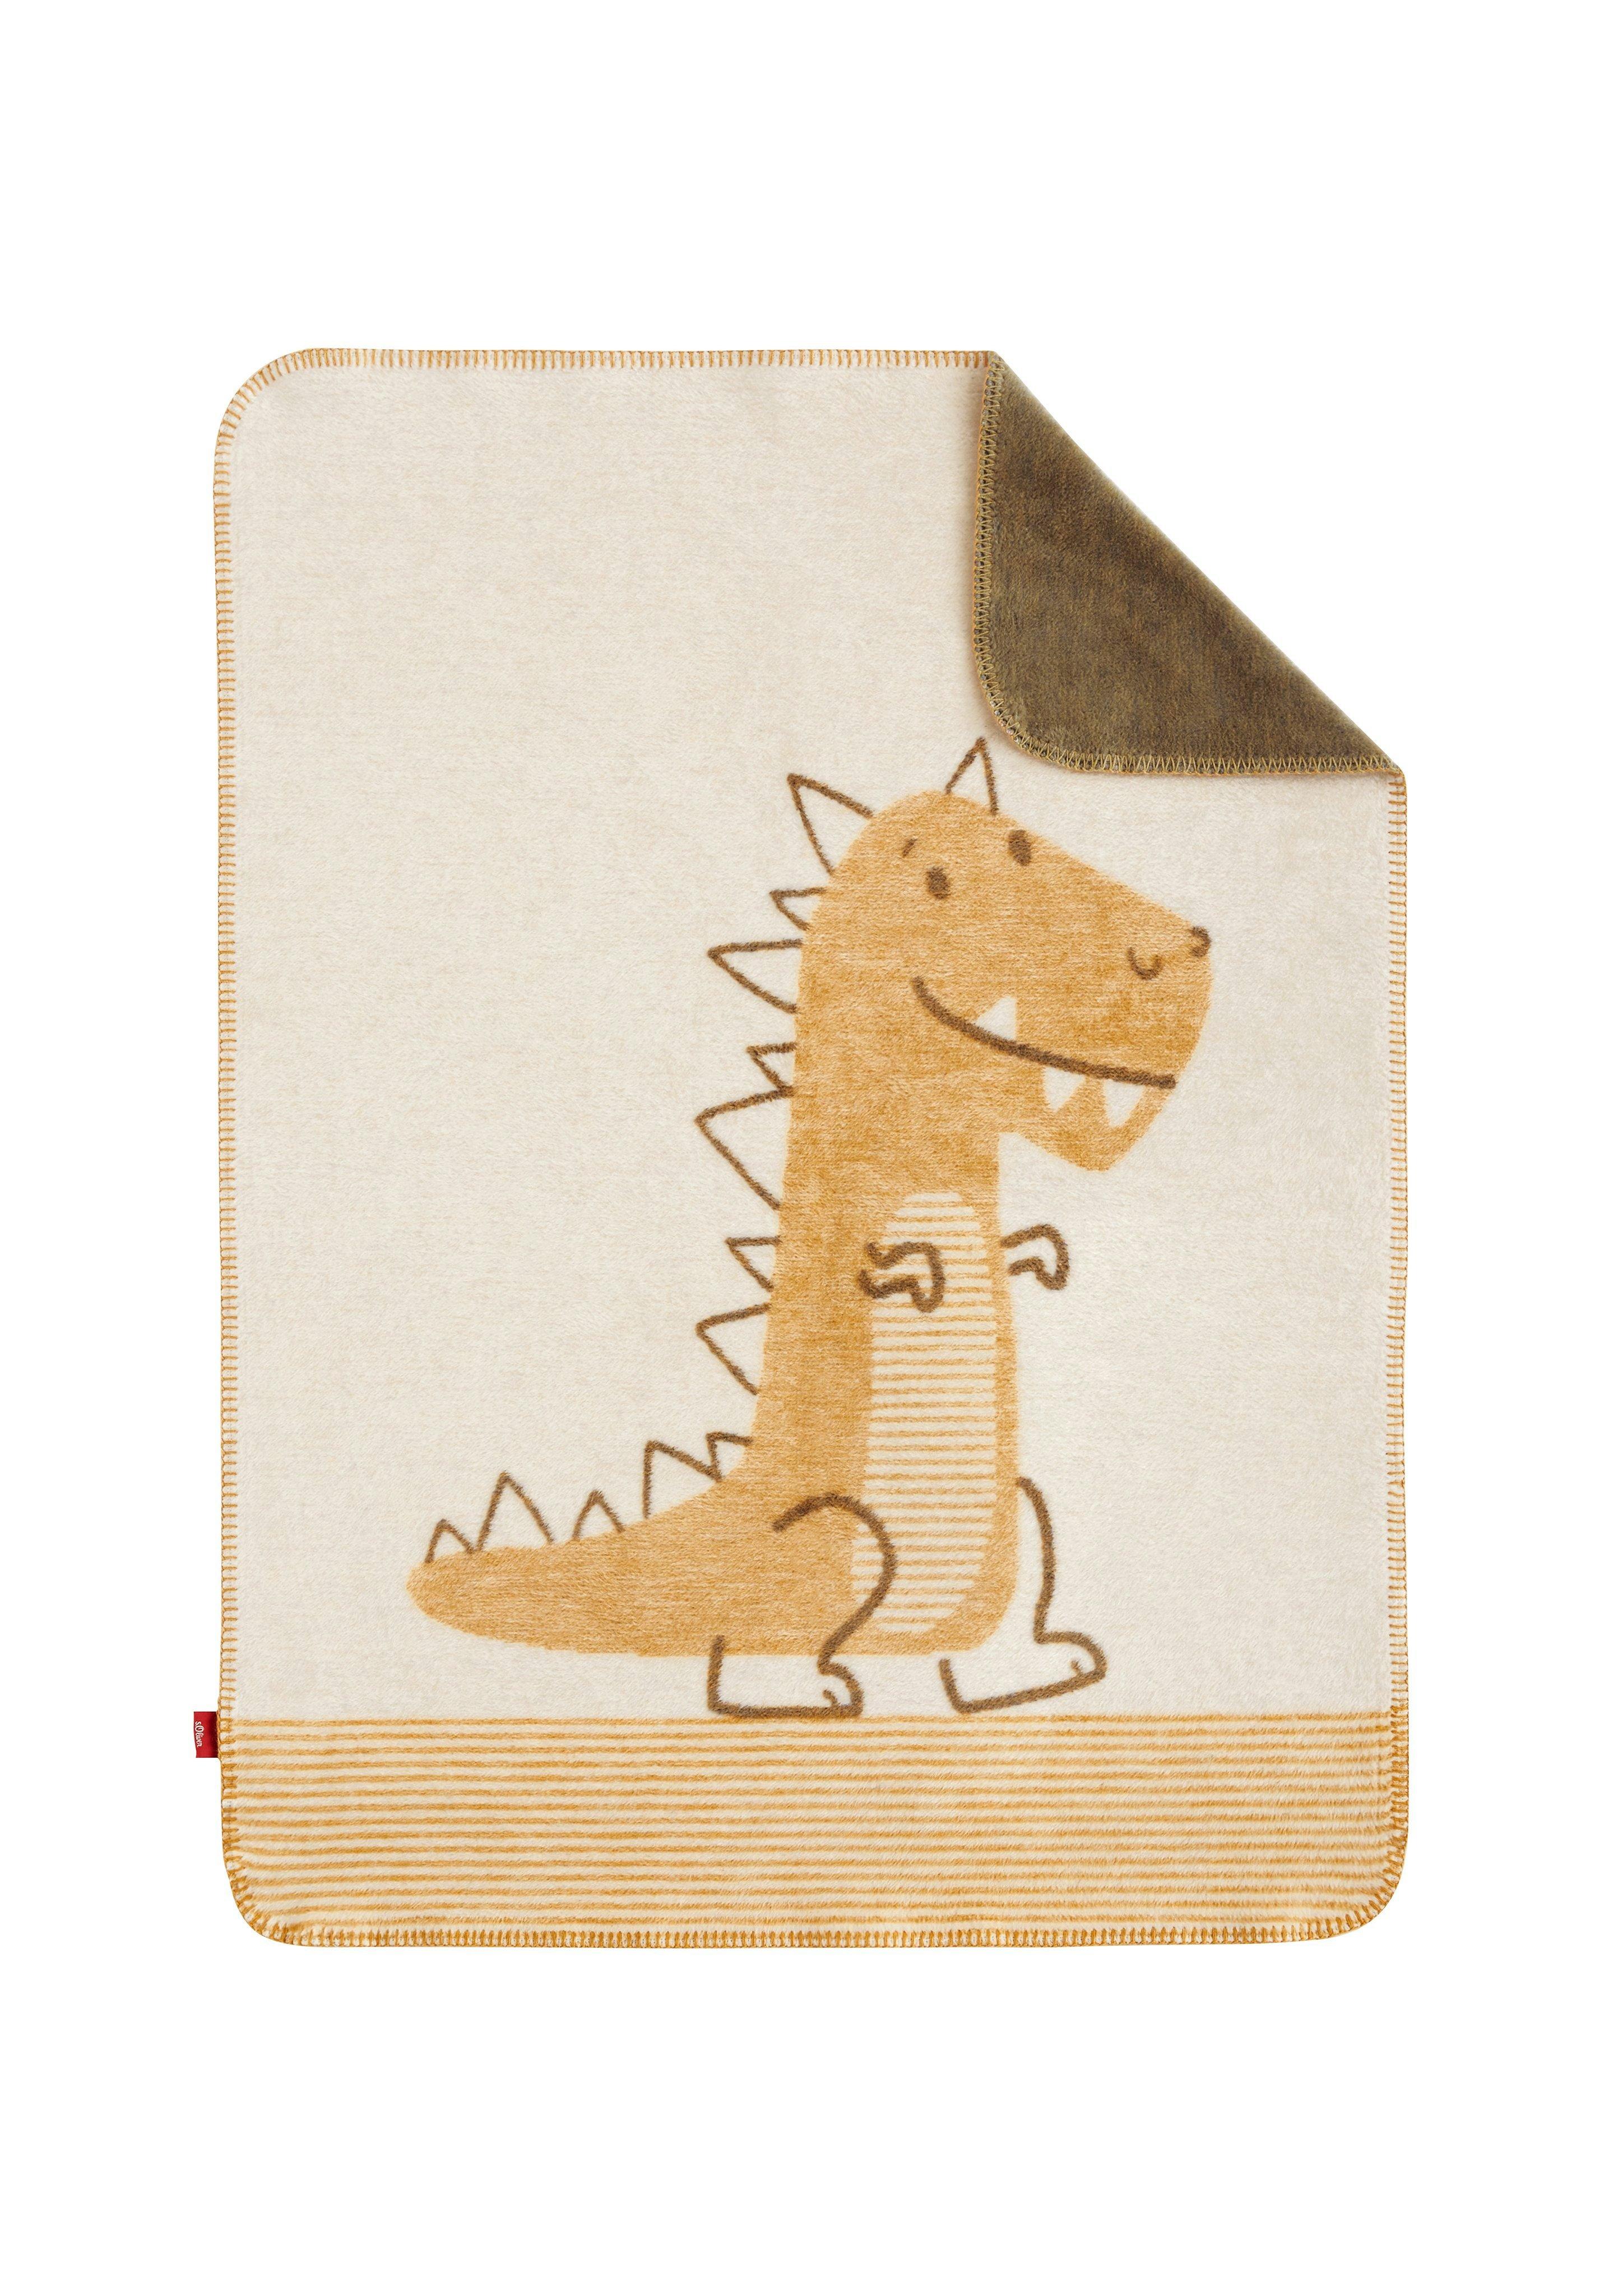 Jacquard-Decke mit Dino-Motiv - beige helles